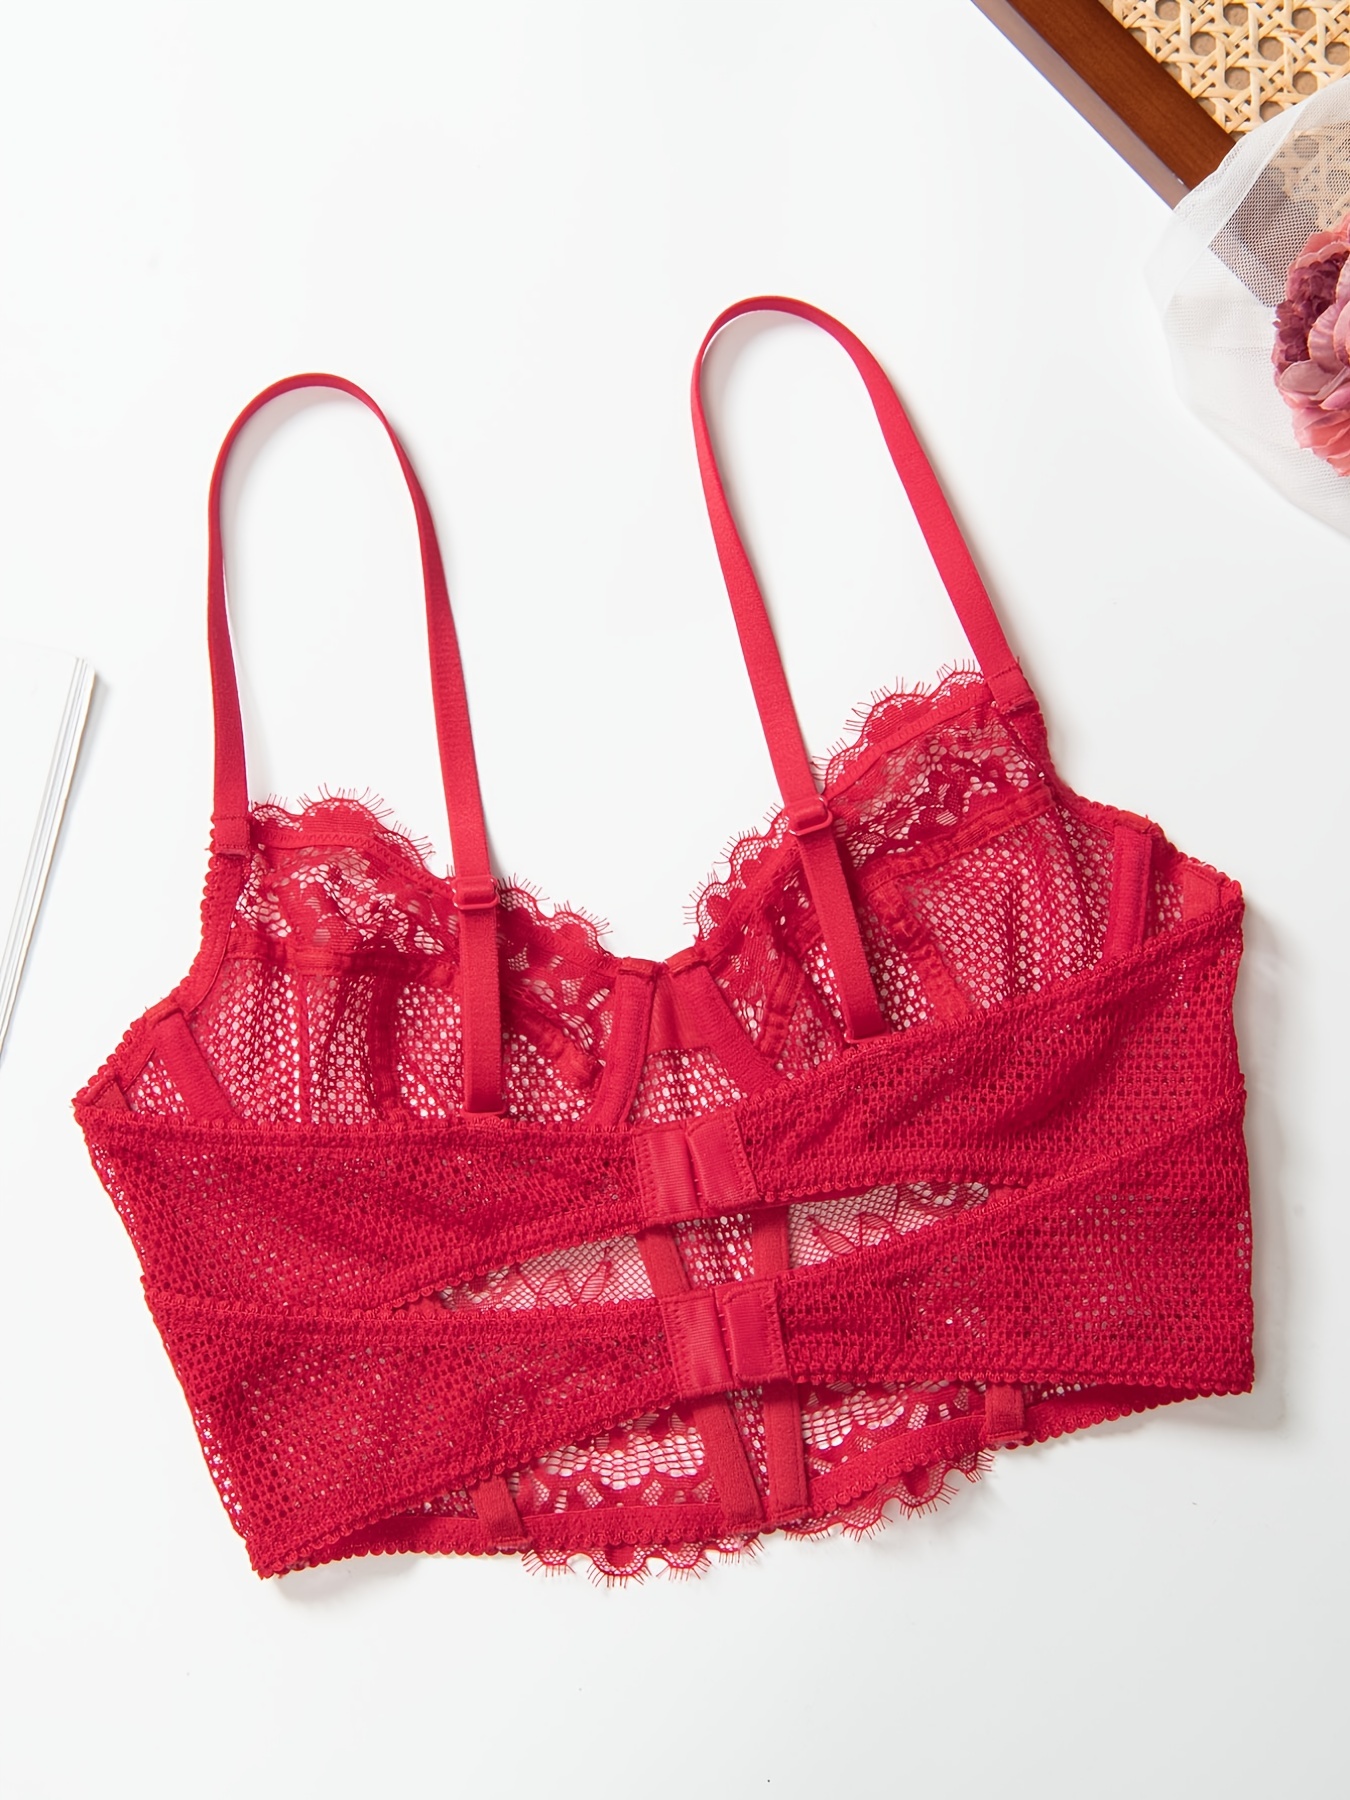 Victoria's secret Lace Bralette Size Small Red Bra Underwire